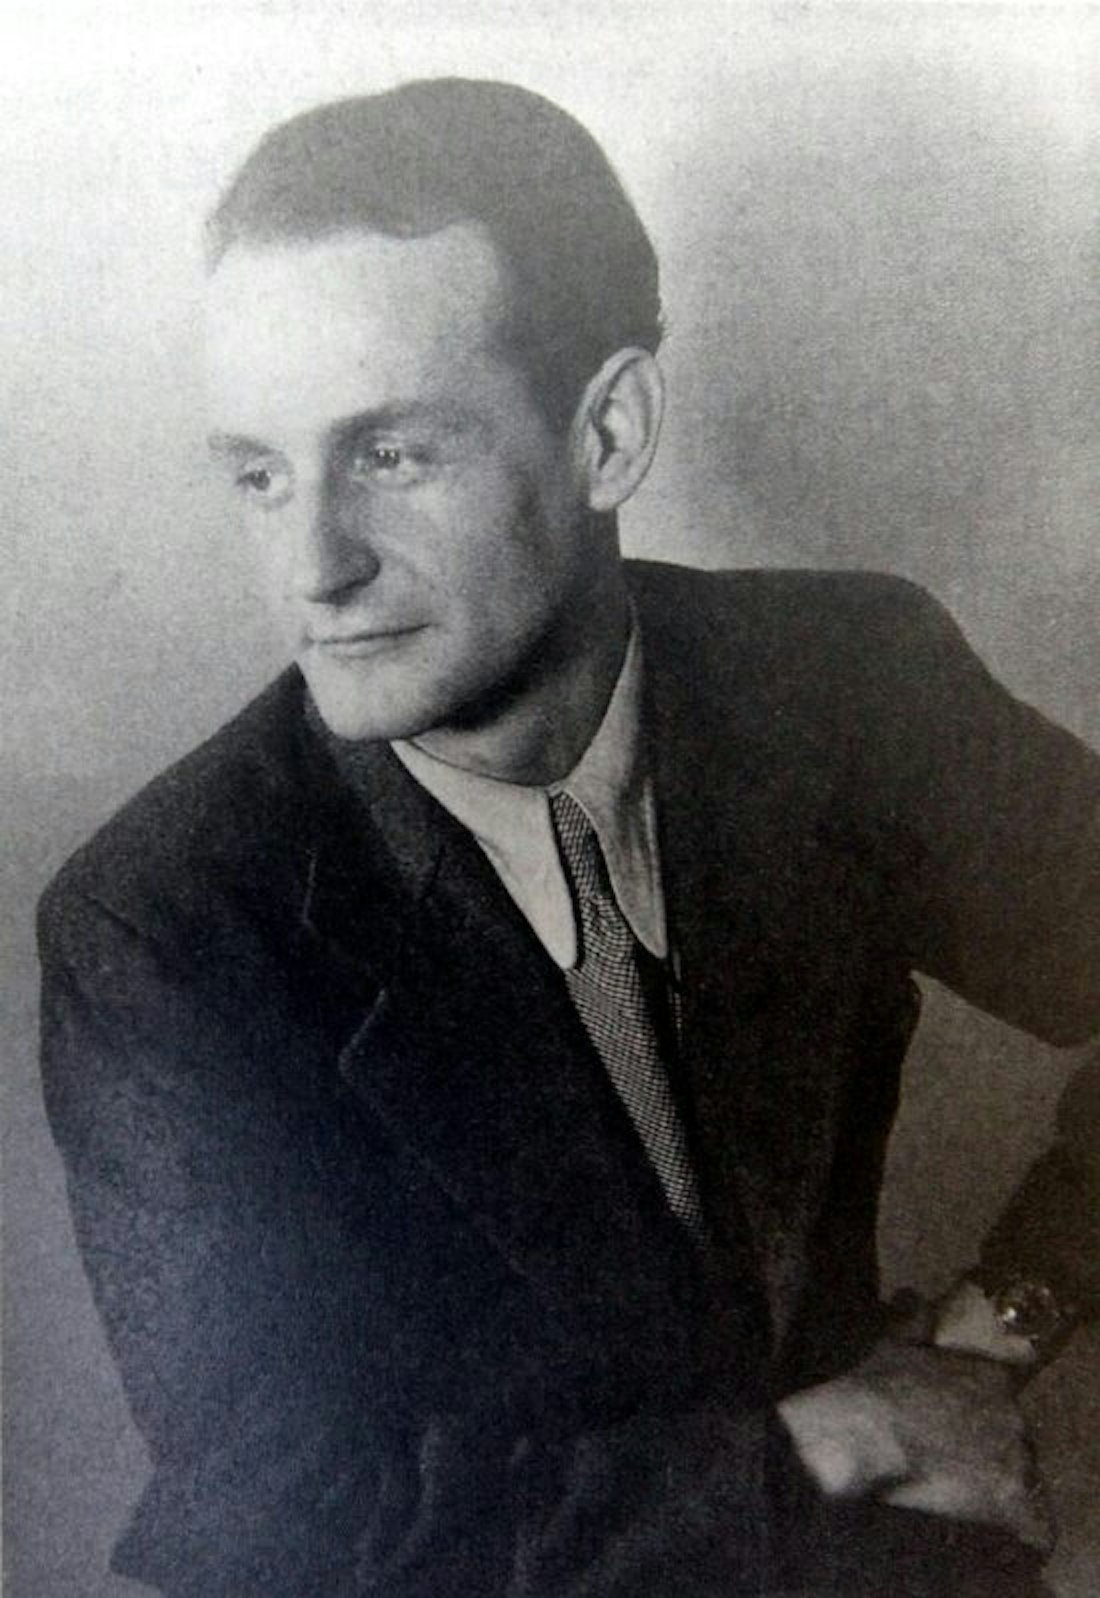 Komponist und Songwriter Franz-Leo Andries